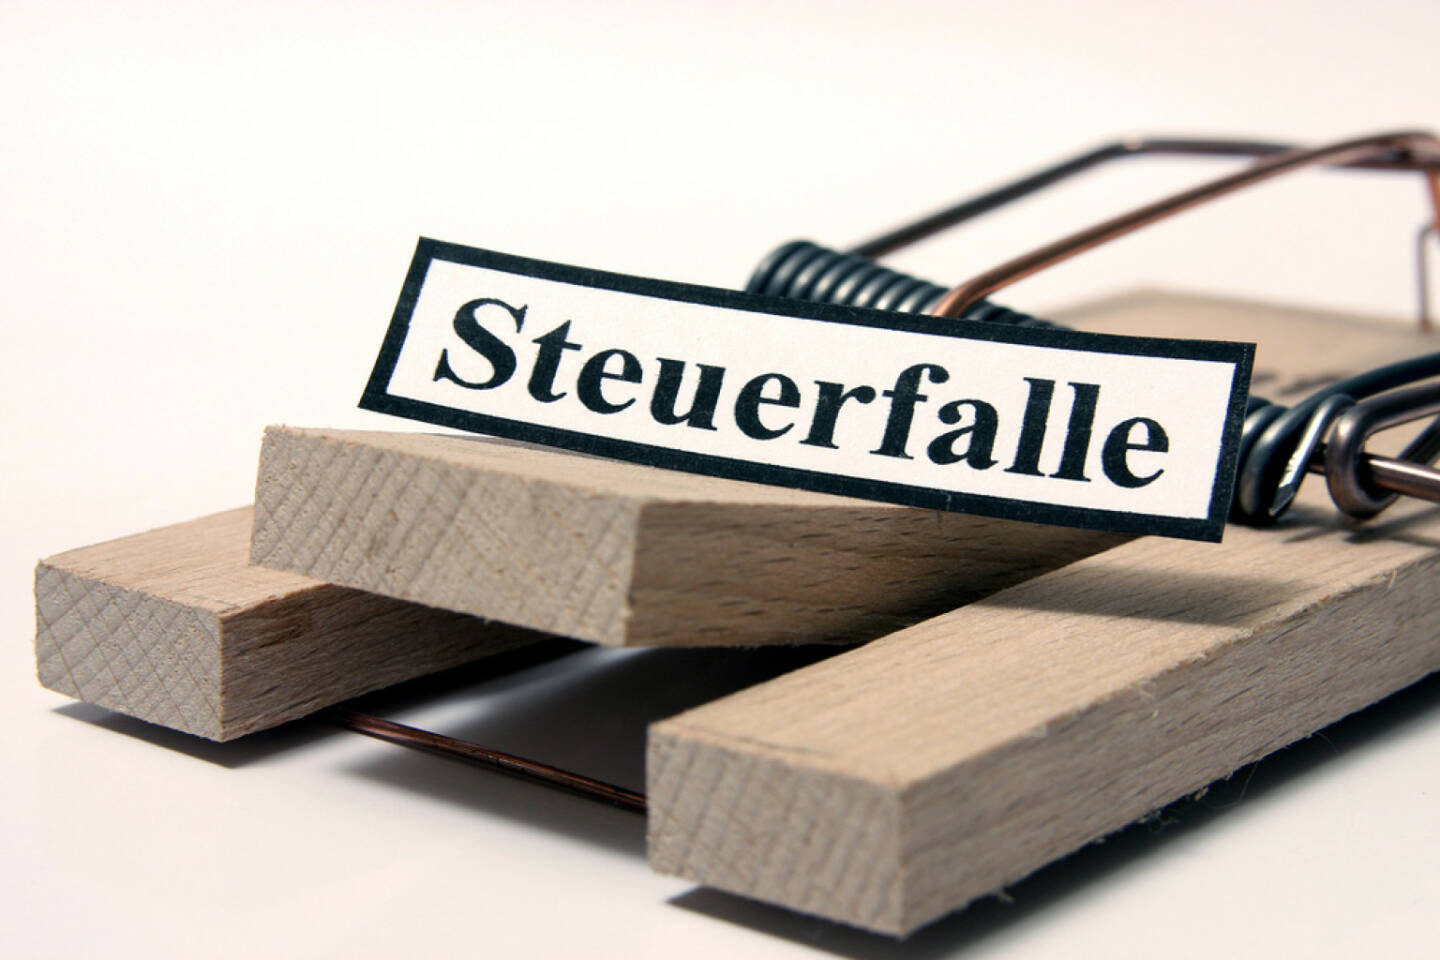 Steuerfalle, Kostenfalle, Steuern, Steuer, Falle, Ausgaben, Geld, Budget, http://www.shutterstock.com/de/pic-202847737/stock-photo-tax-trap-german-sign.html